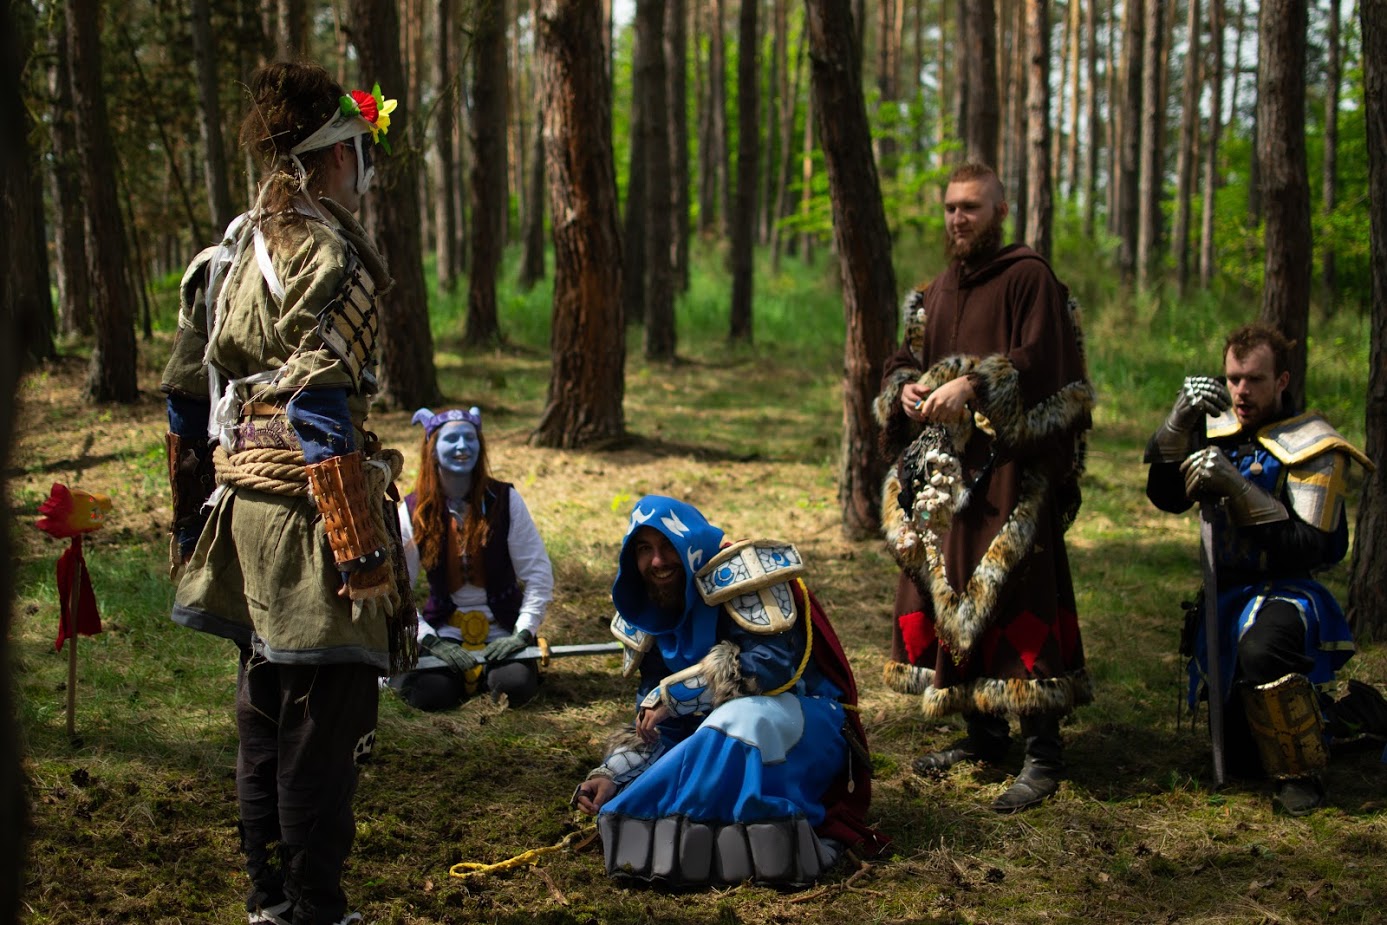 Fantasztikus fotókon, ahogy cosplayesek élőben nyomják a World of Warcraftot egy cseh erdőben